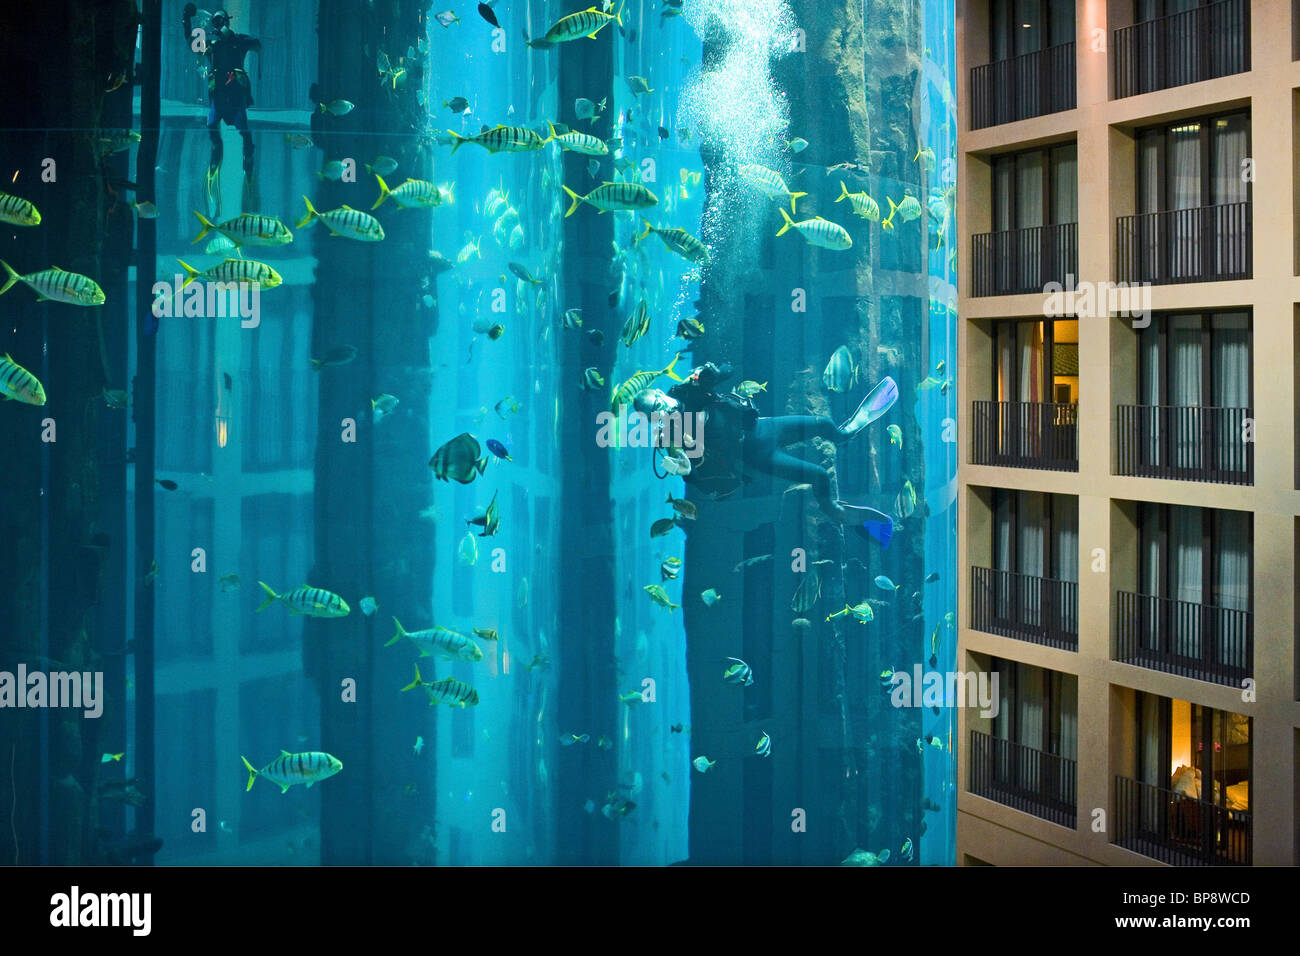 L'hôtel 5 étoiles Radisson SAS Hotel dispose le plus grand aquarium cylindrique. entrée de Aqua Dom, un plongeur nettoie le réservoir, Banque D'Images